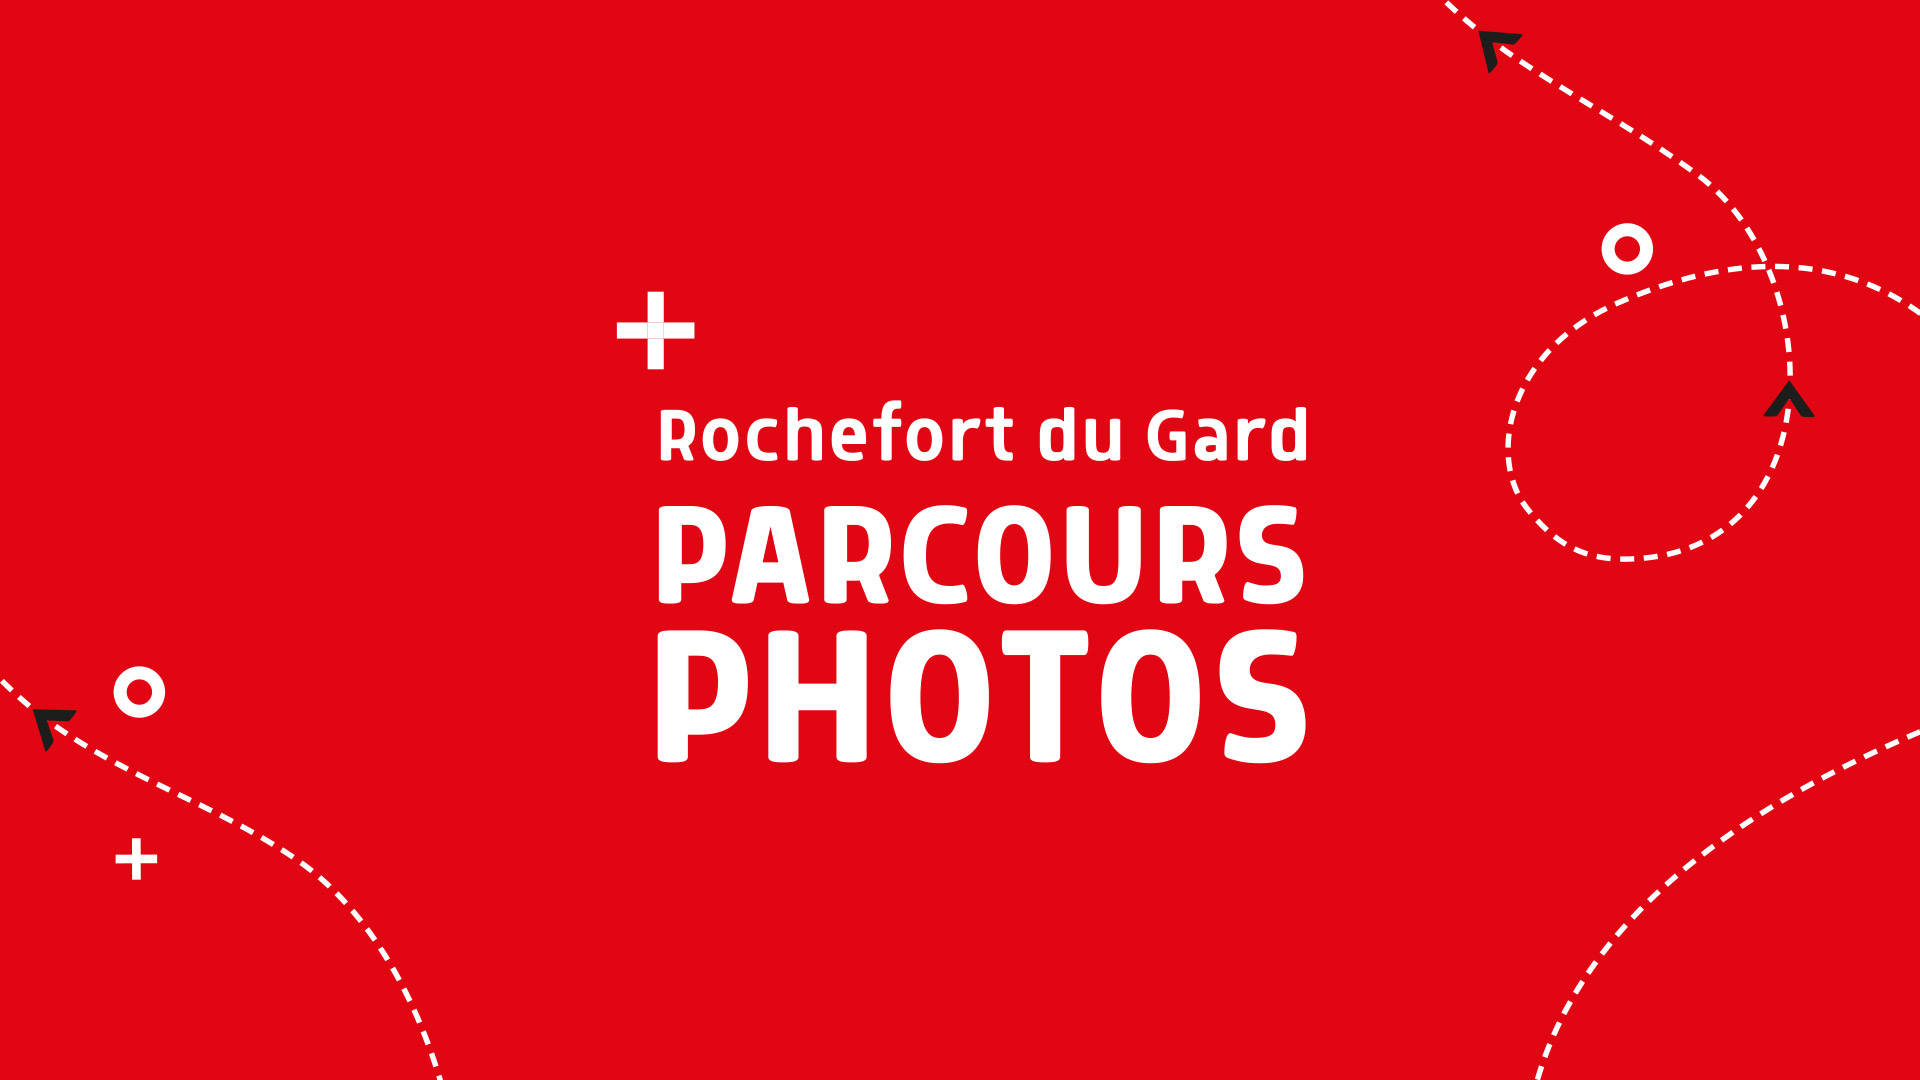 Parcours Photos - M. Tisseyre - Rochefort du gard